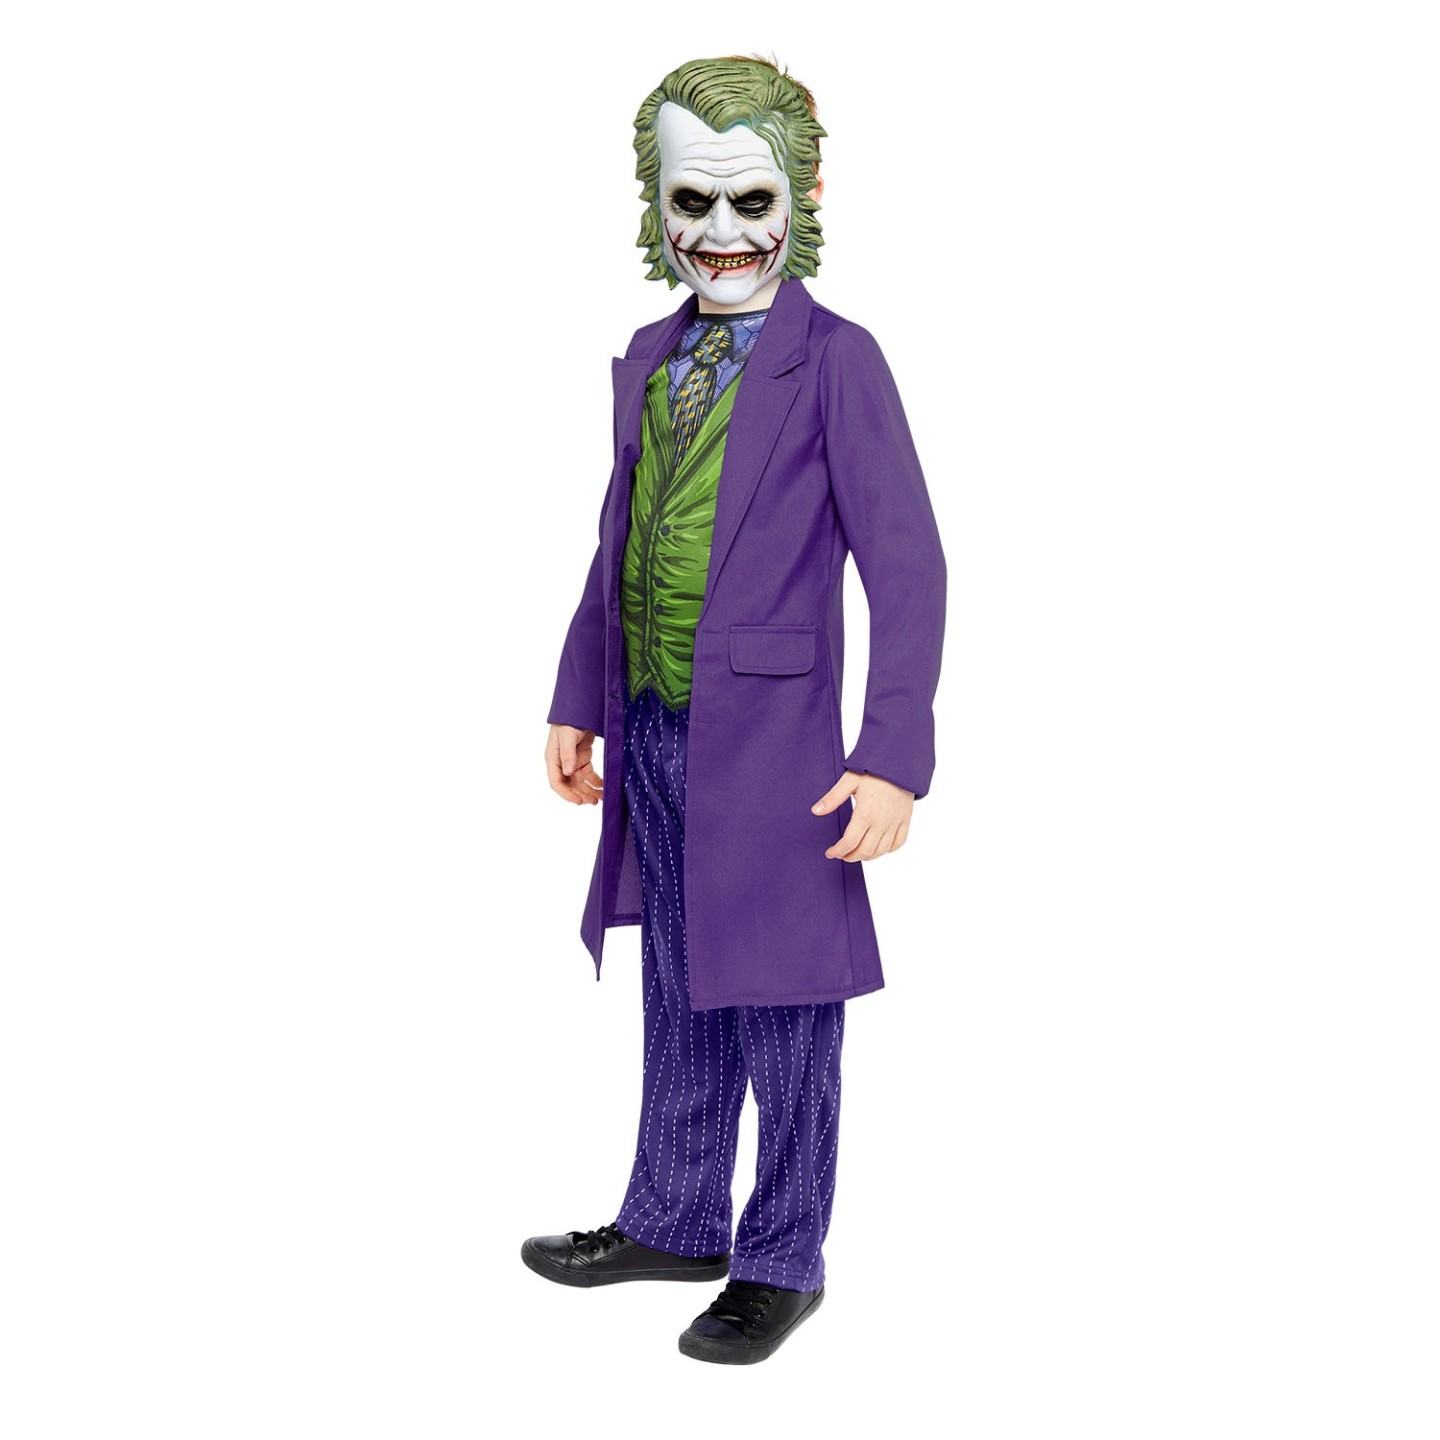 Subjectief Grappig Somatische cel The Joker kostuum kind kopen| Jokershop.be - Halloween Verkleedkleding